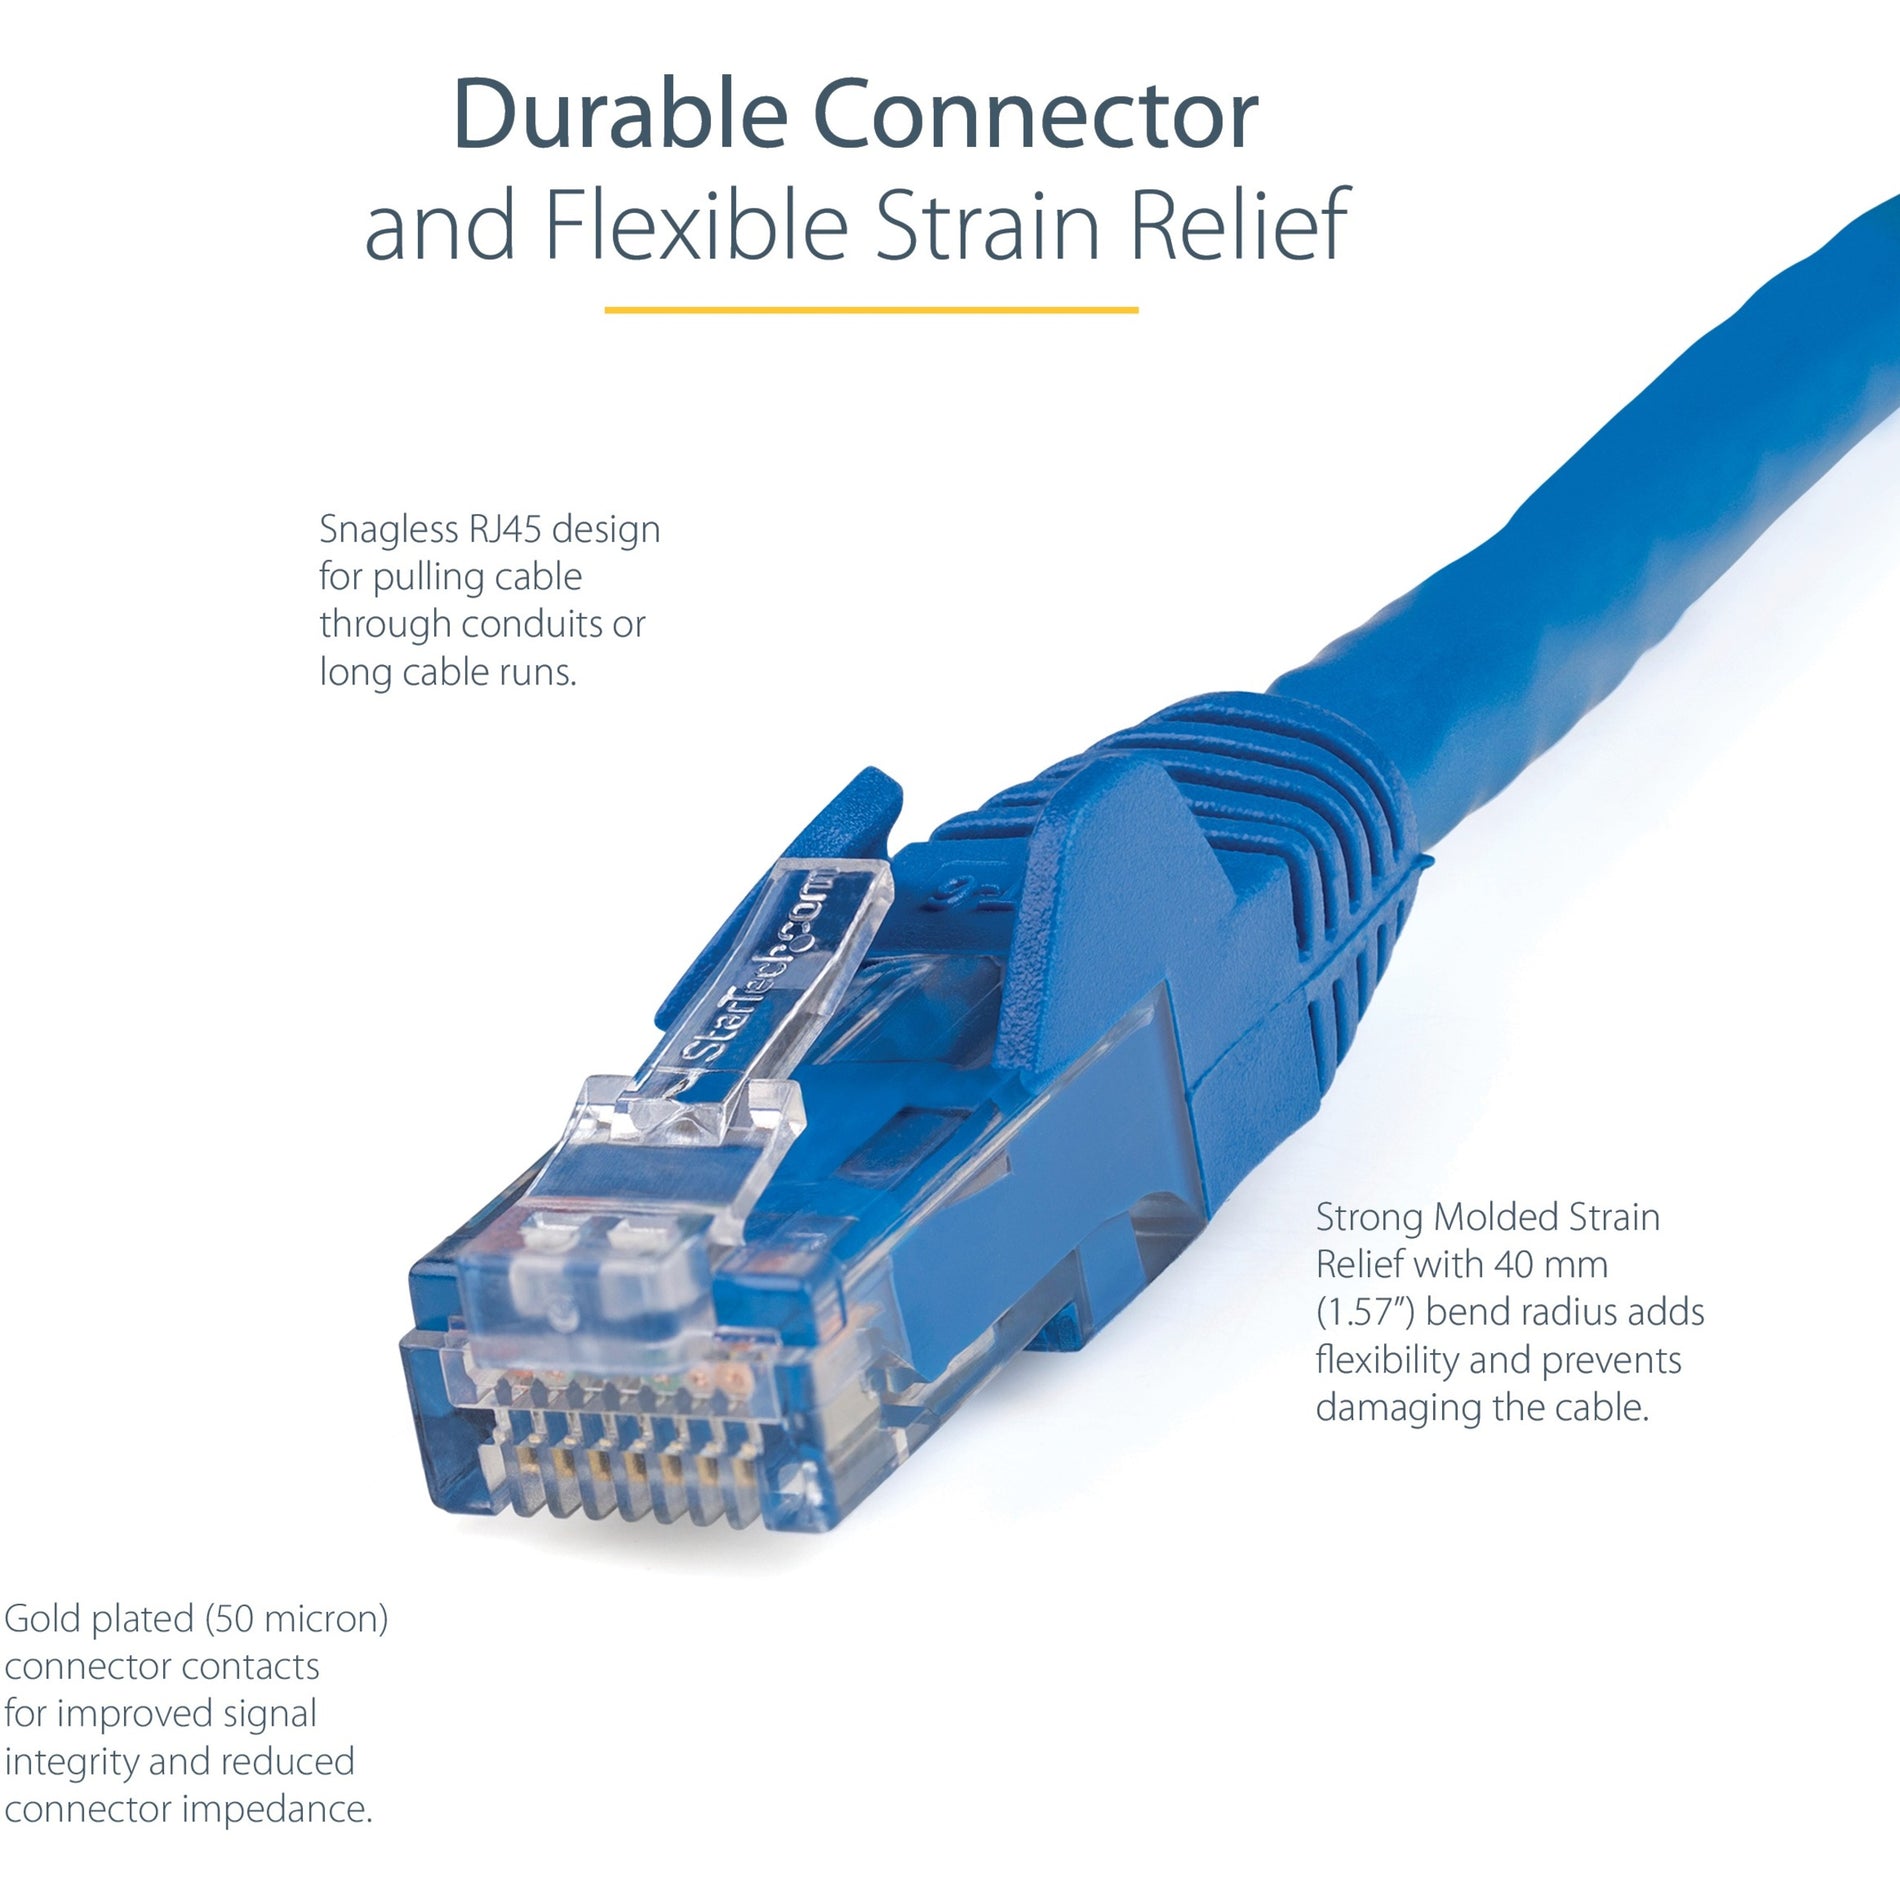 StarTech.com N6PATCH6BL Cat6 Cable, 6 ft Blue Ethernet Cable, Snagless RJ45 Connectors